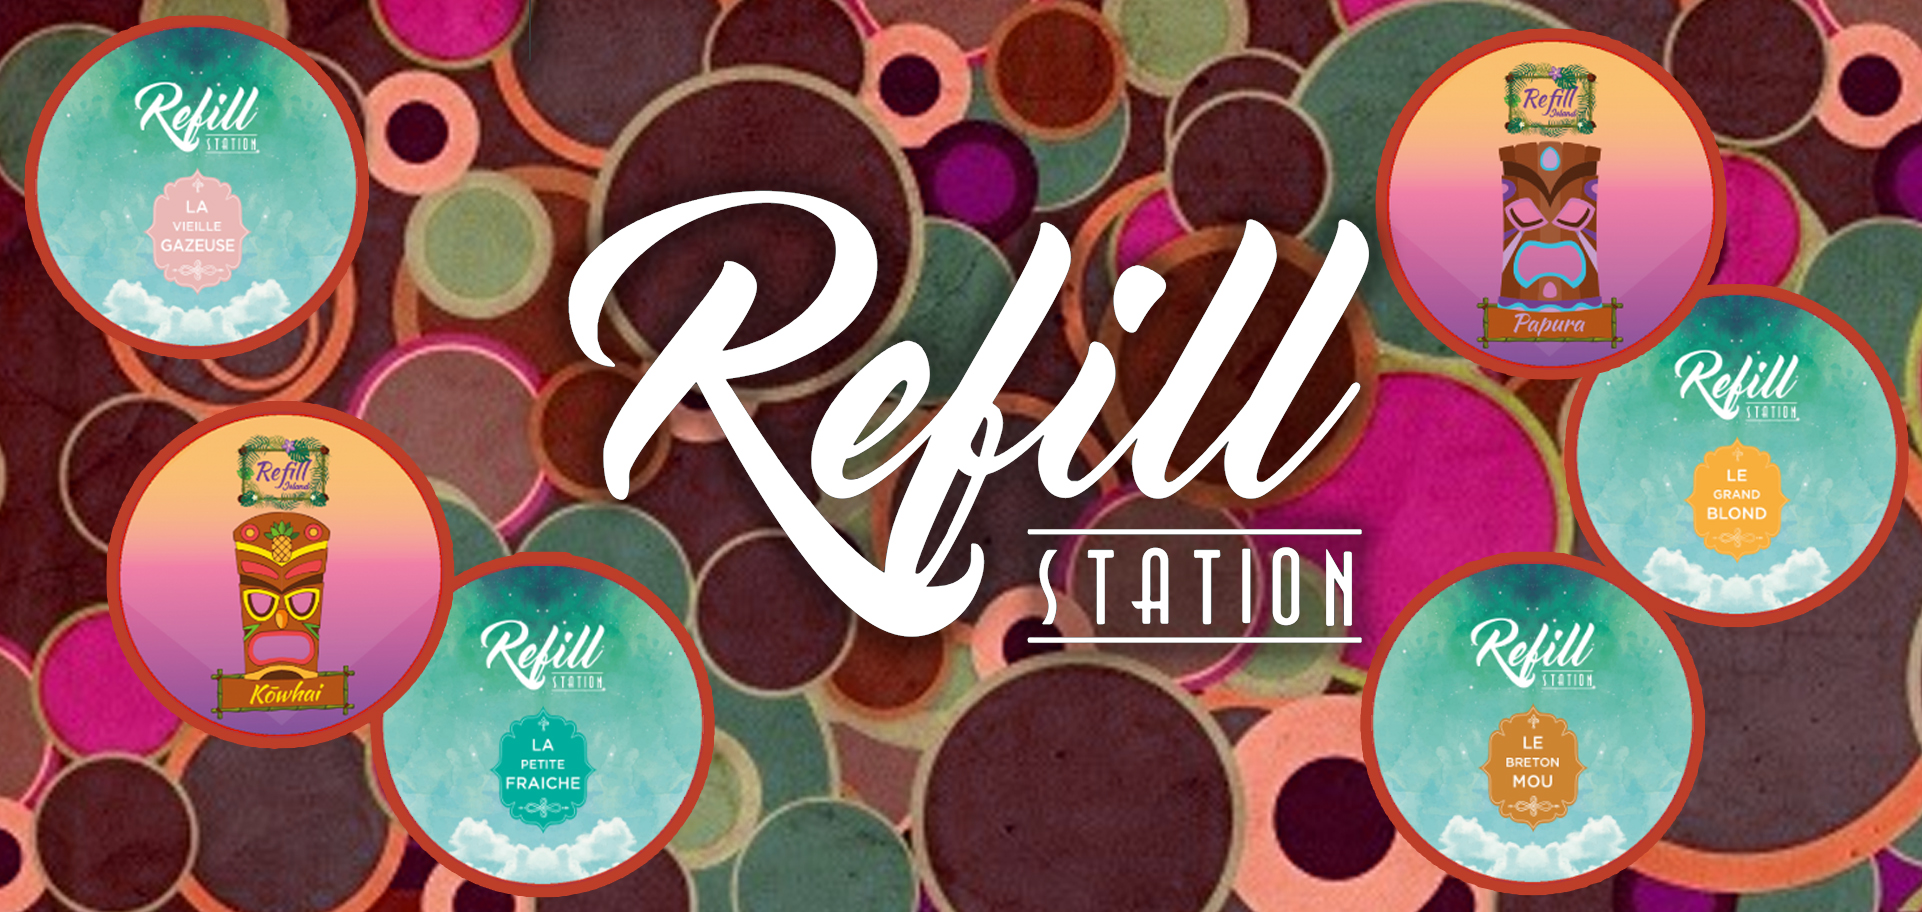 Refill Station